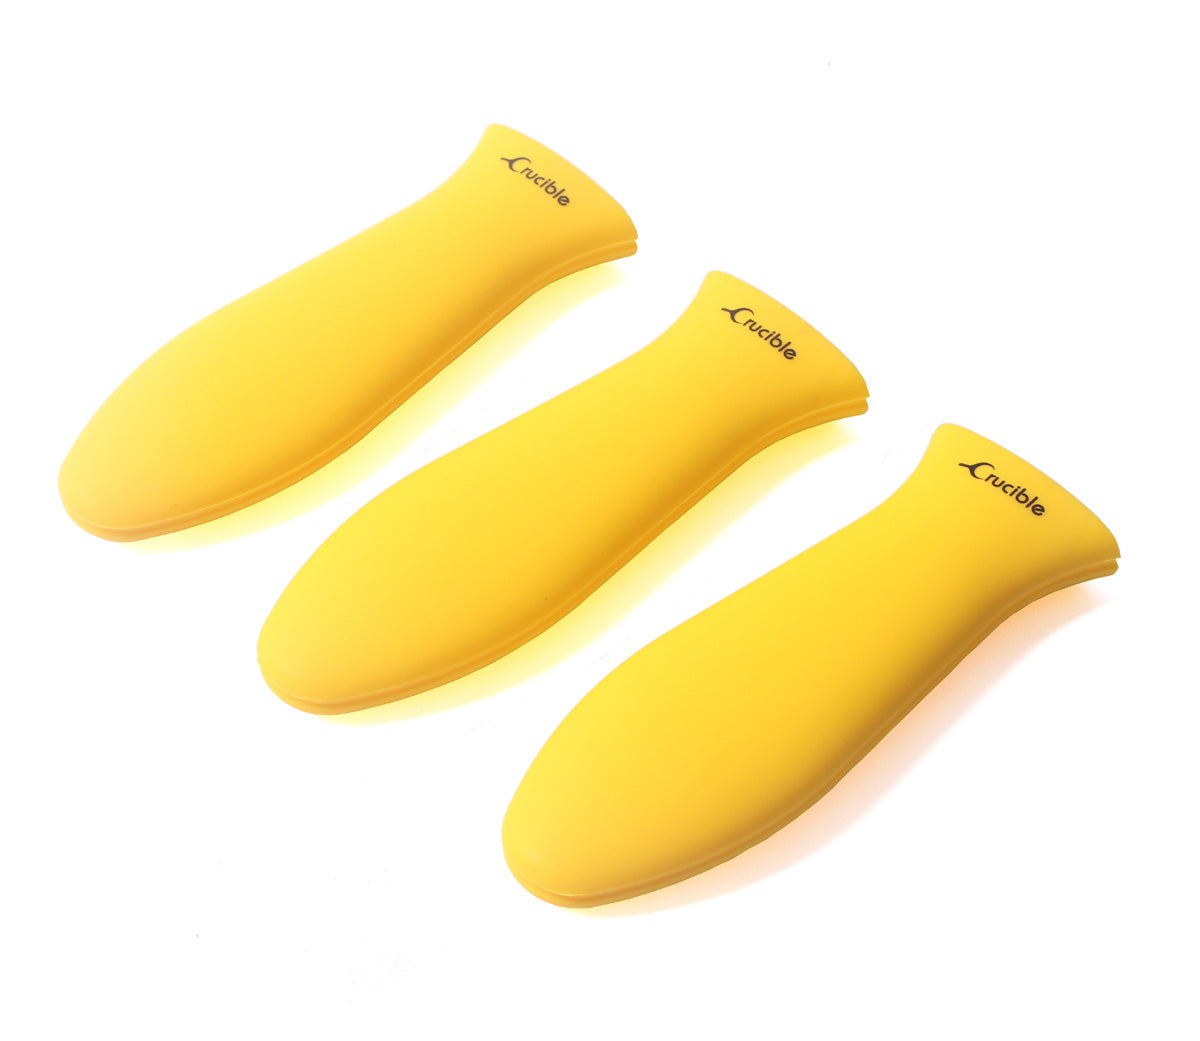 硅胶热手柄支架、隔热垫（黄色大号）、套筒握把、手柄套